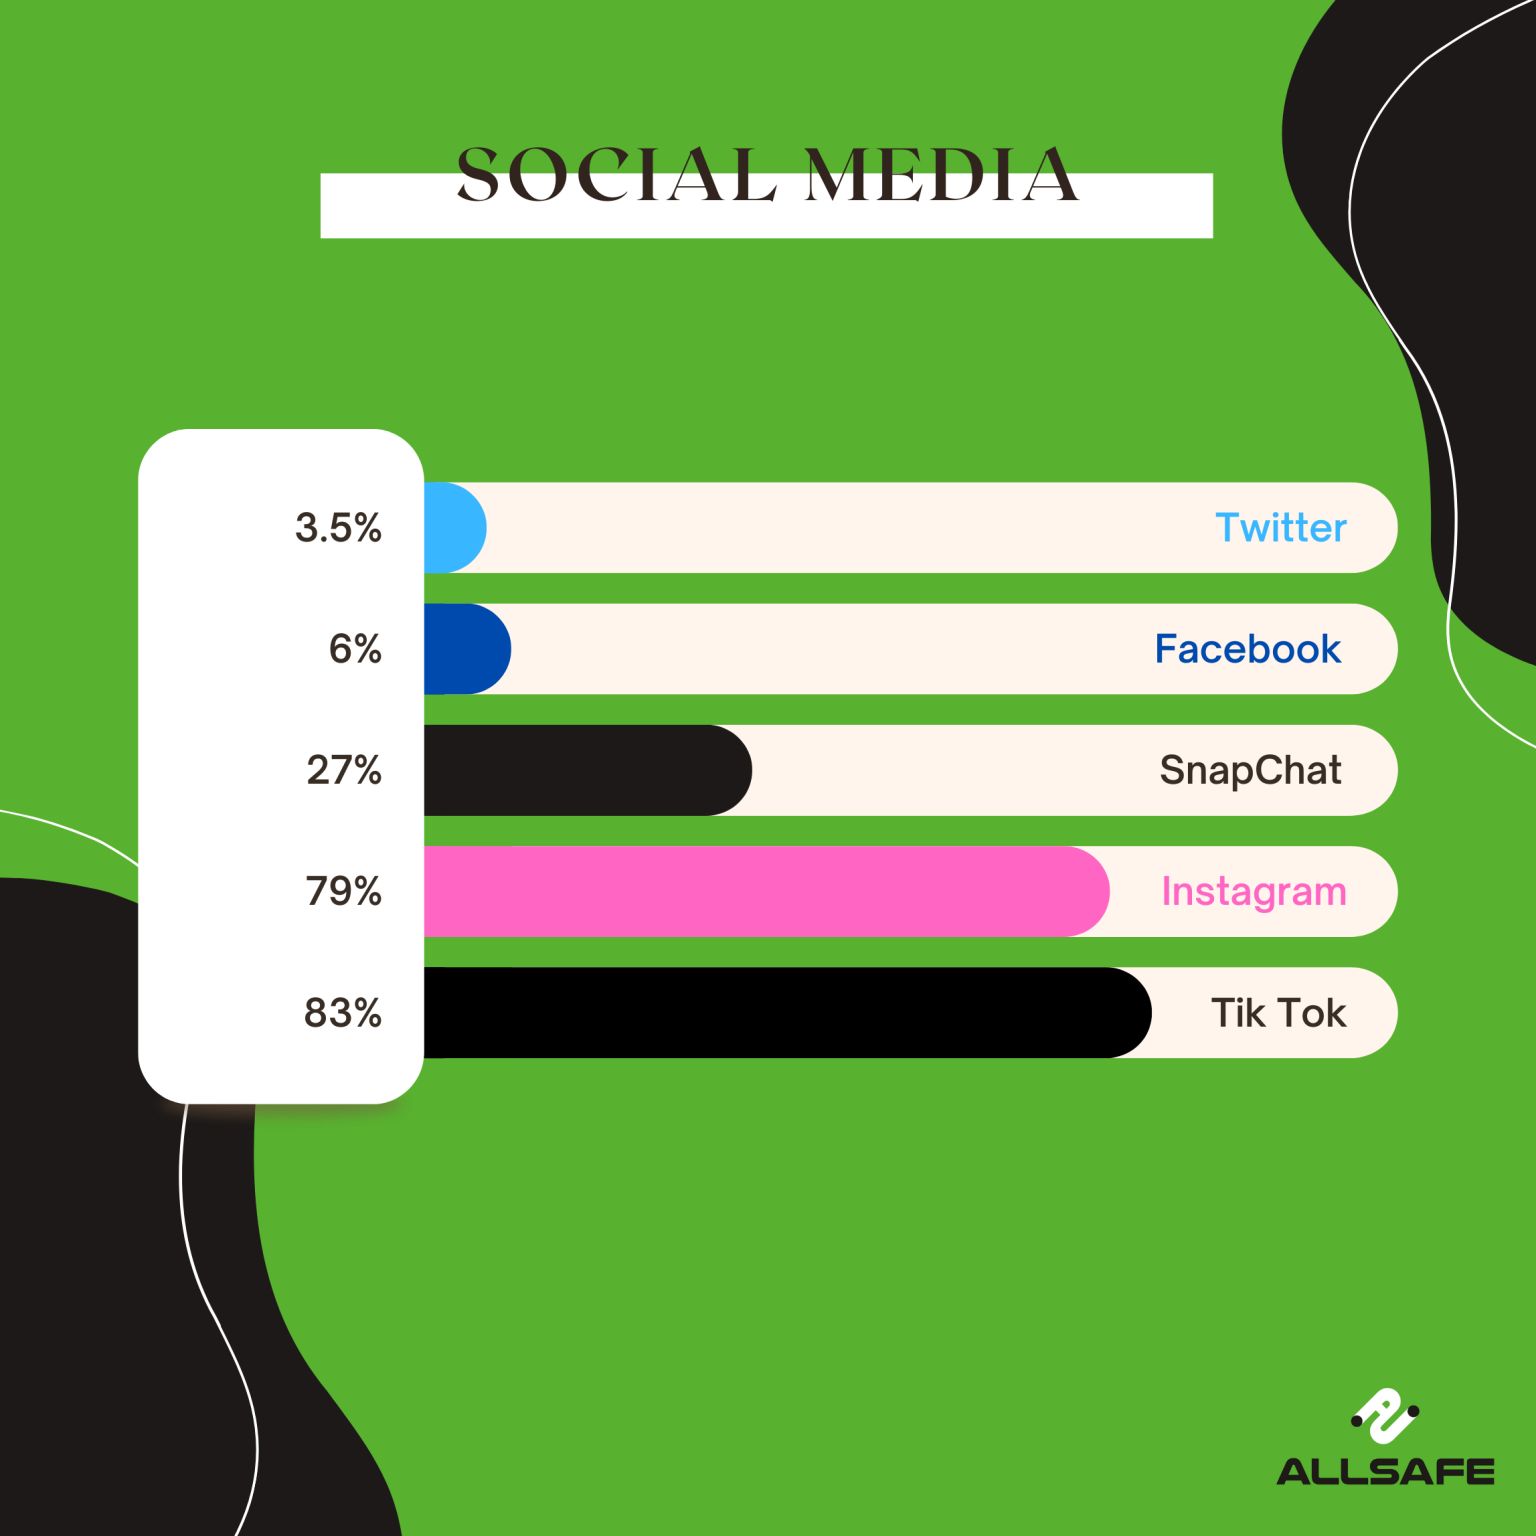 Social Media Survey